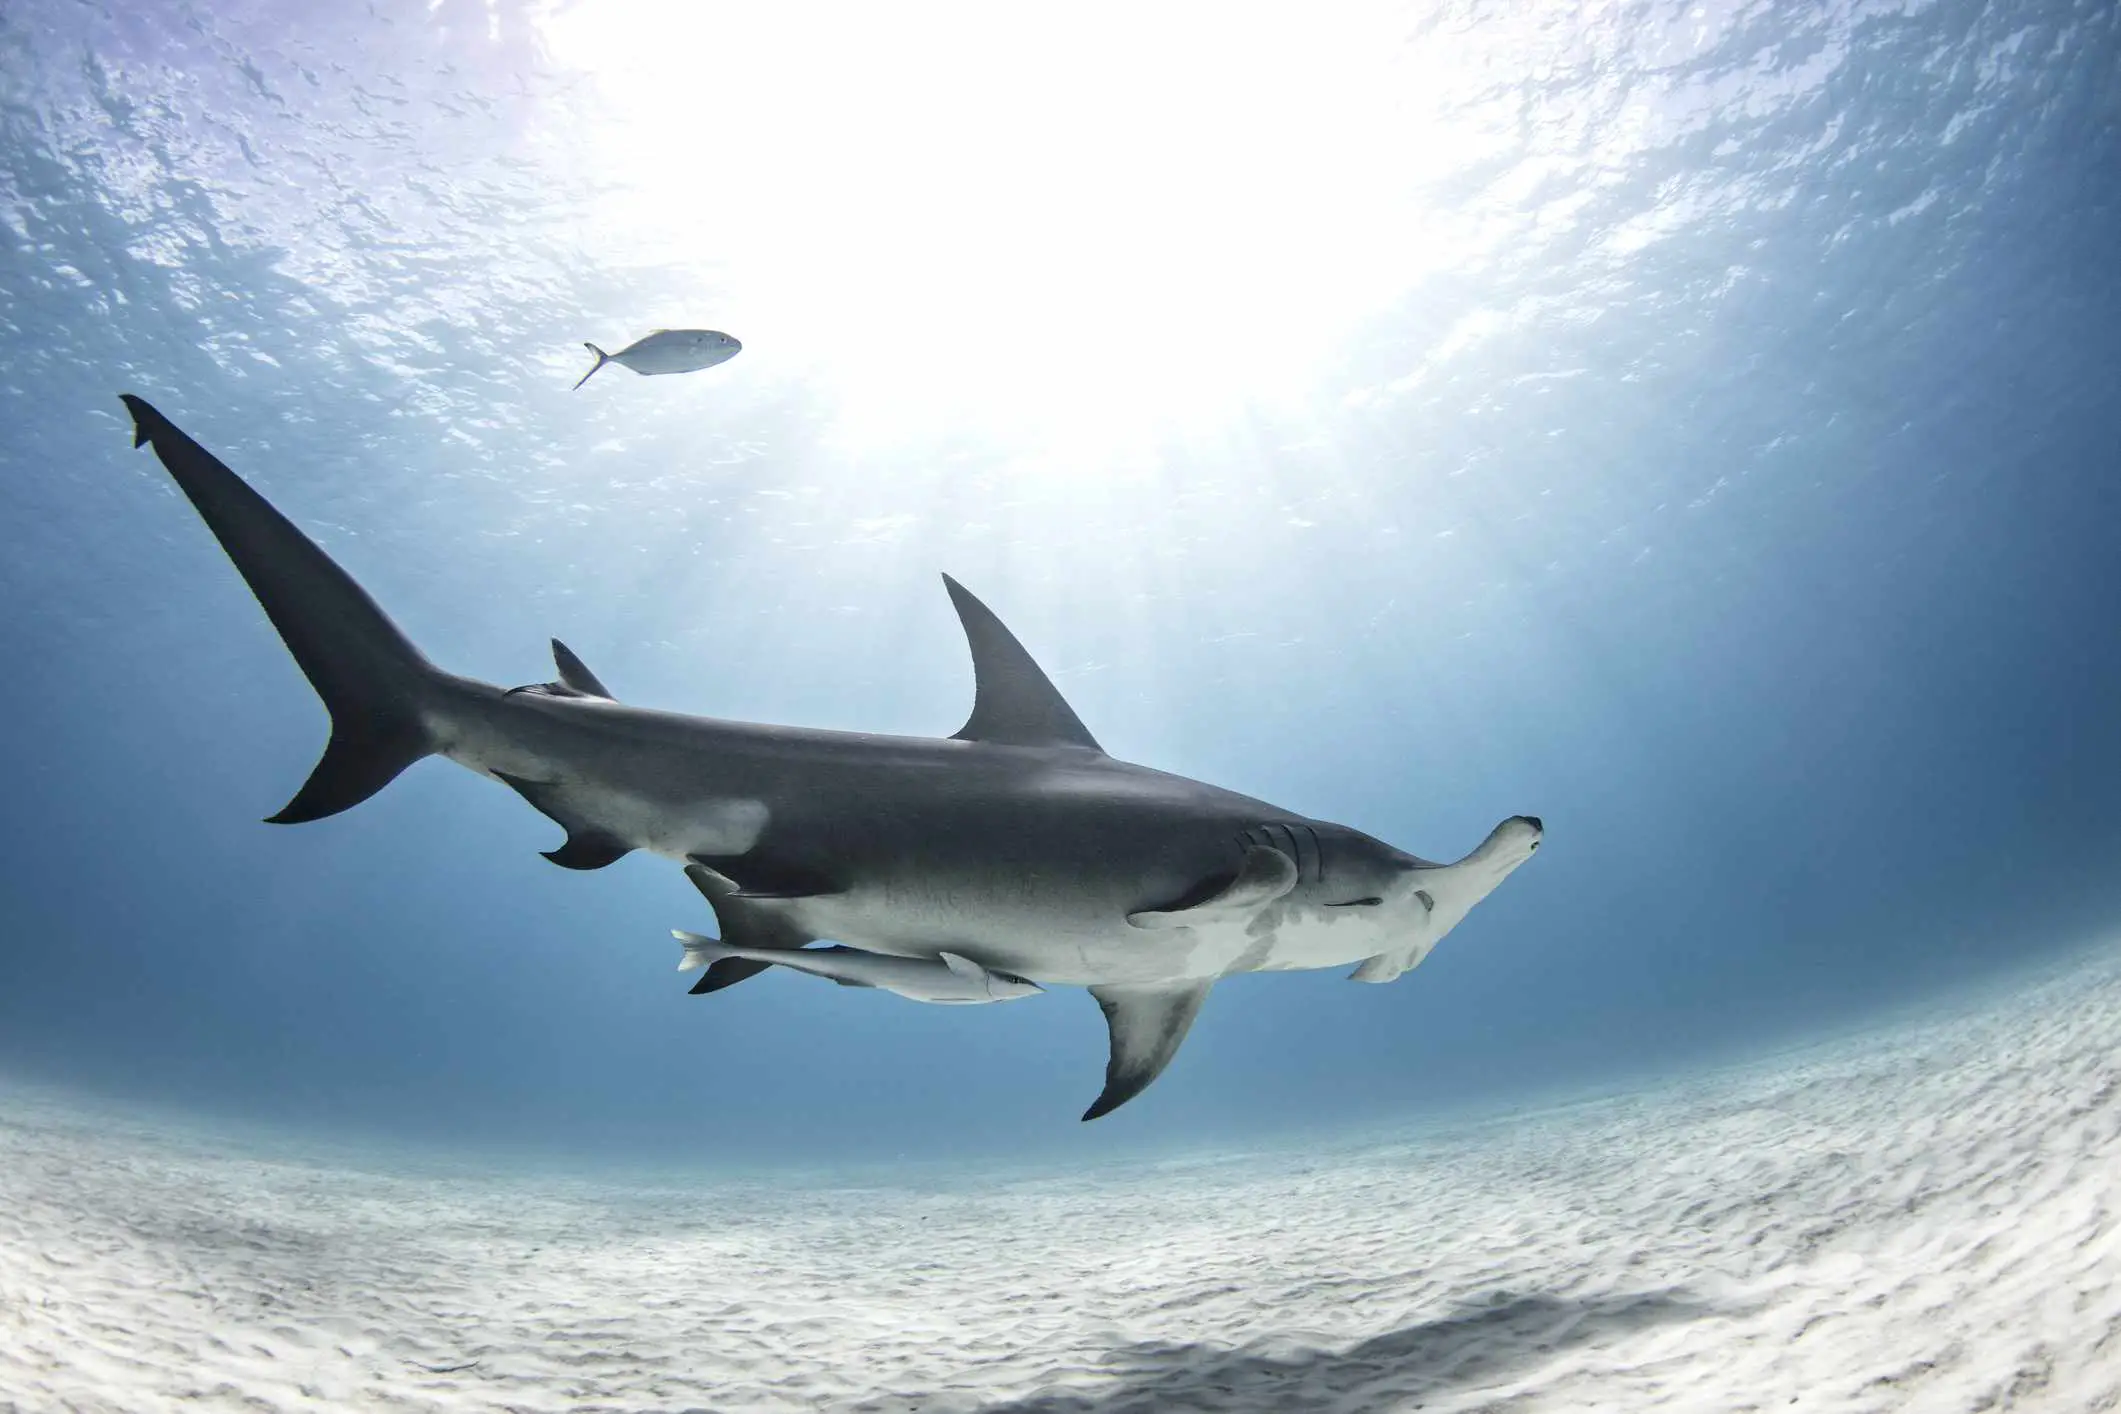 Uma imagem de um tubarão-martelo capturada com uma lente olho de peixe.